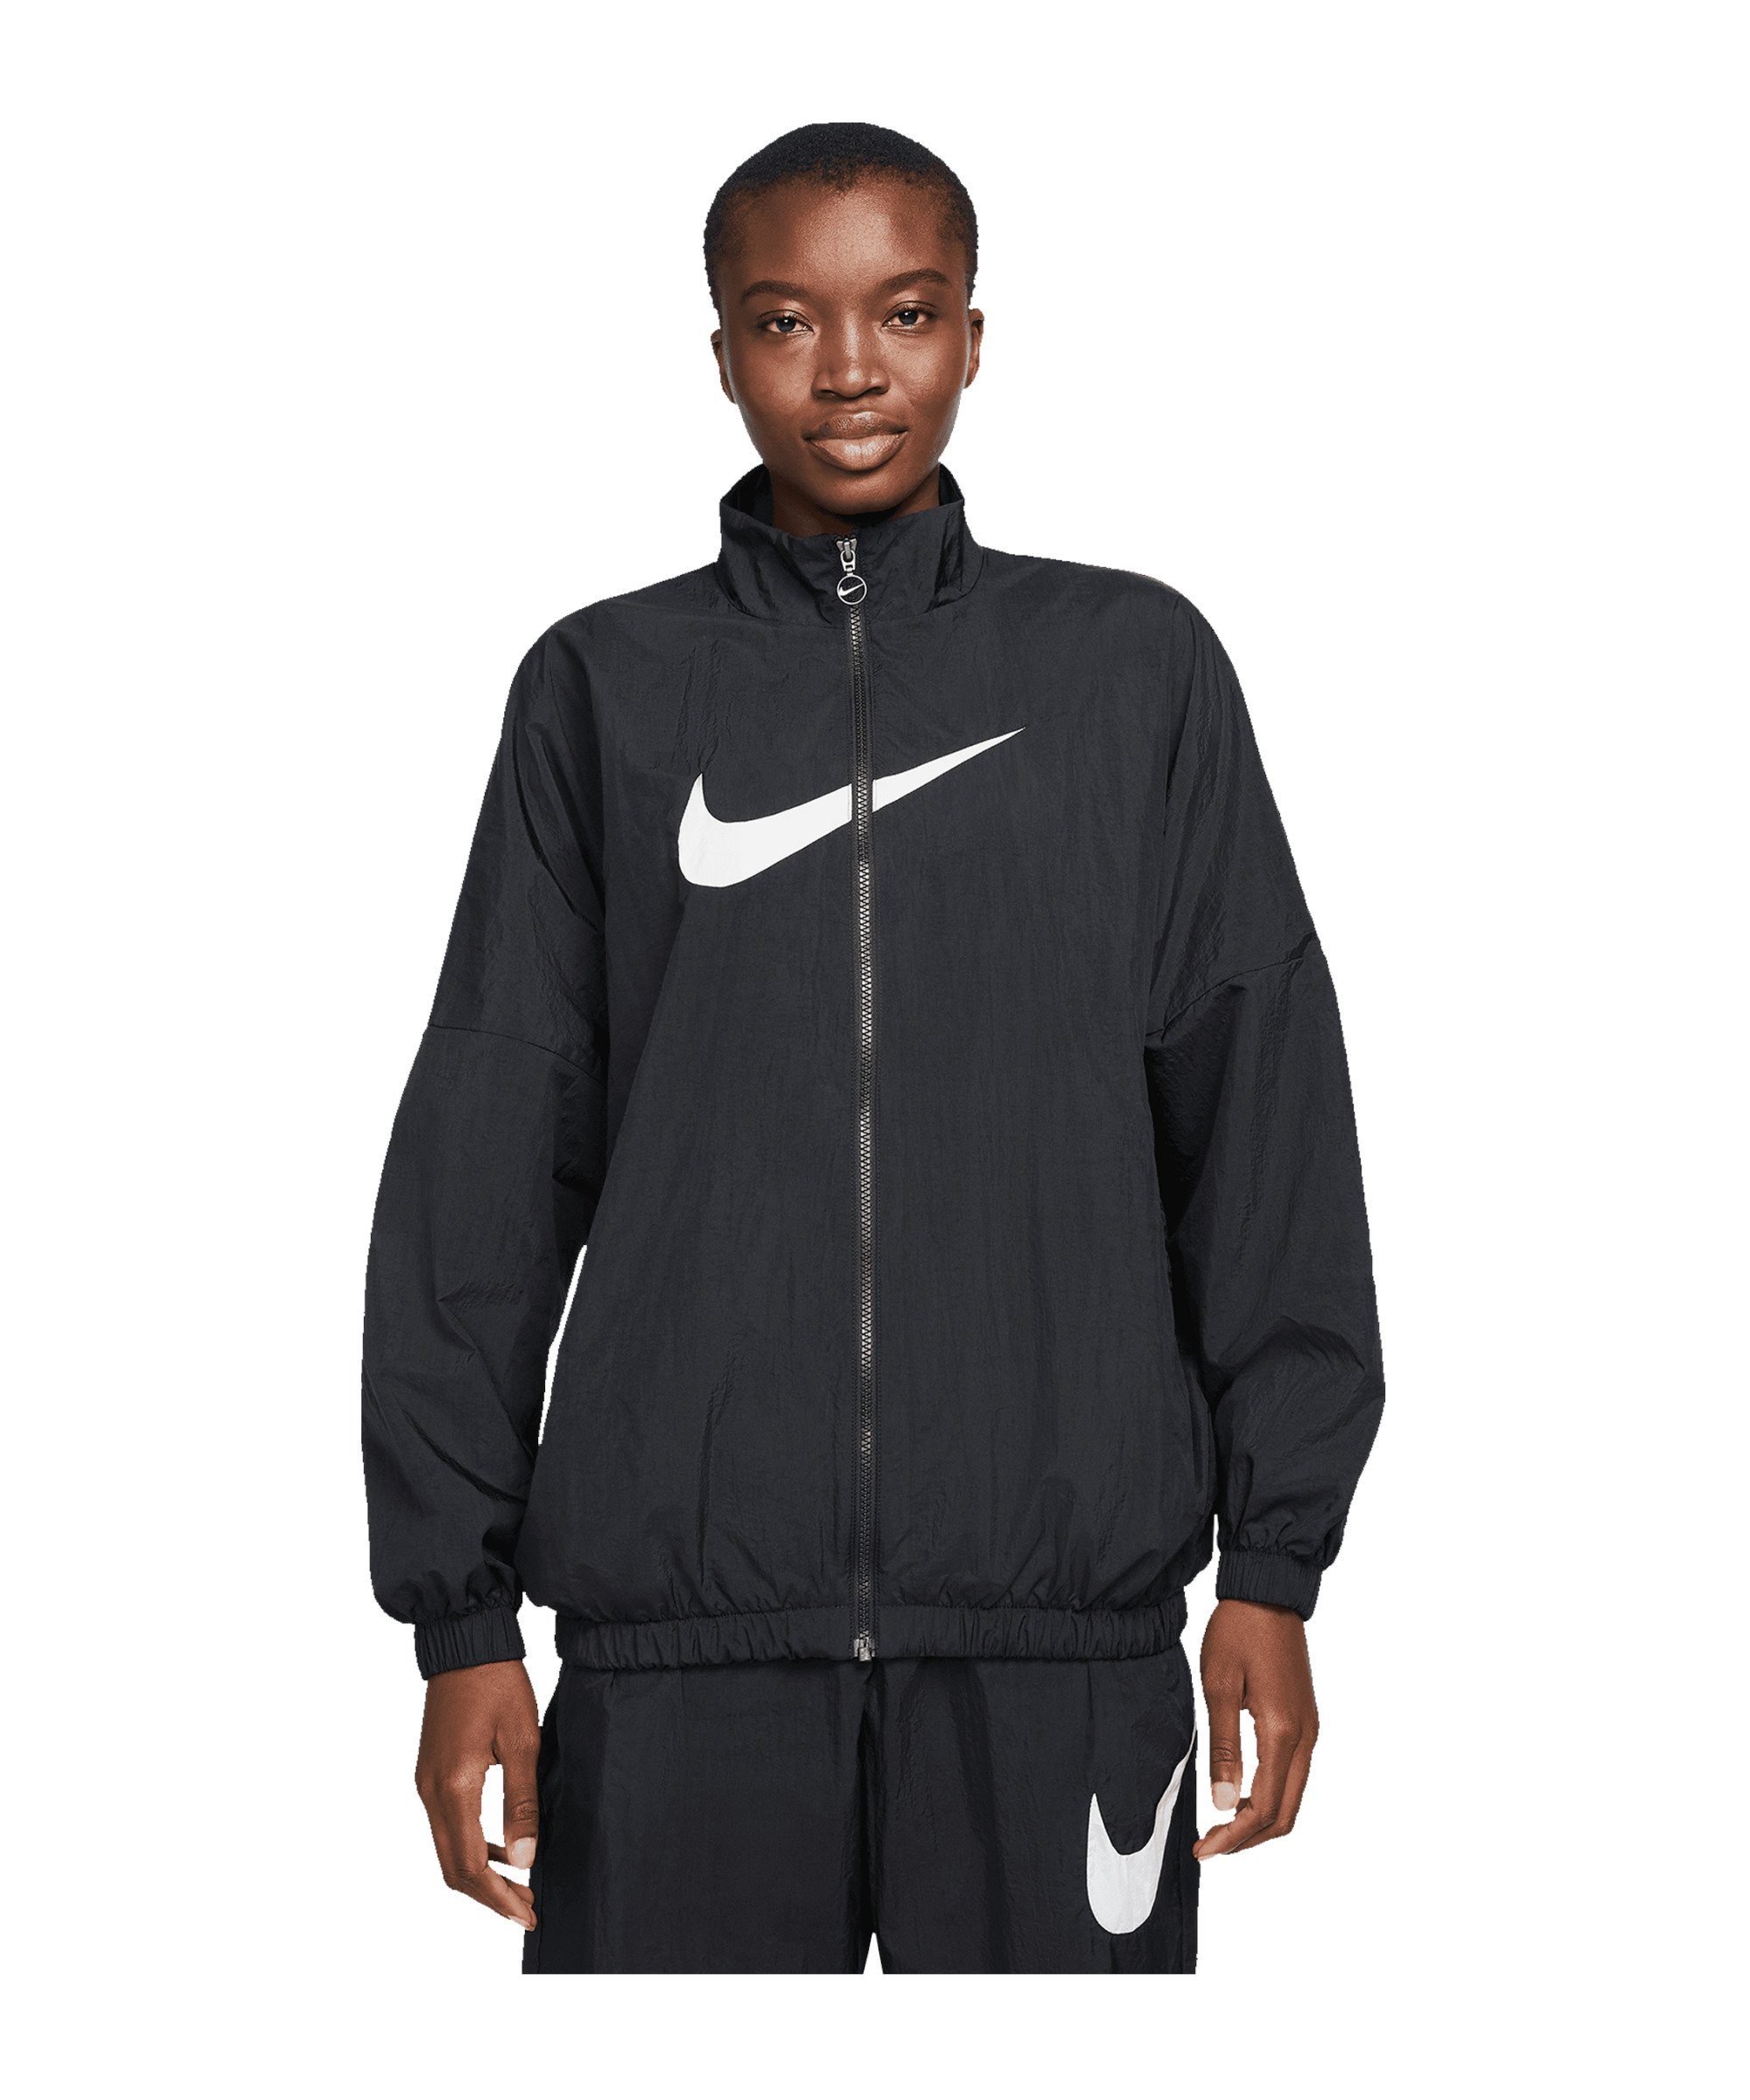 Nike Sportswear Allwetterjacke Essential Woven Jacke Damen